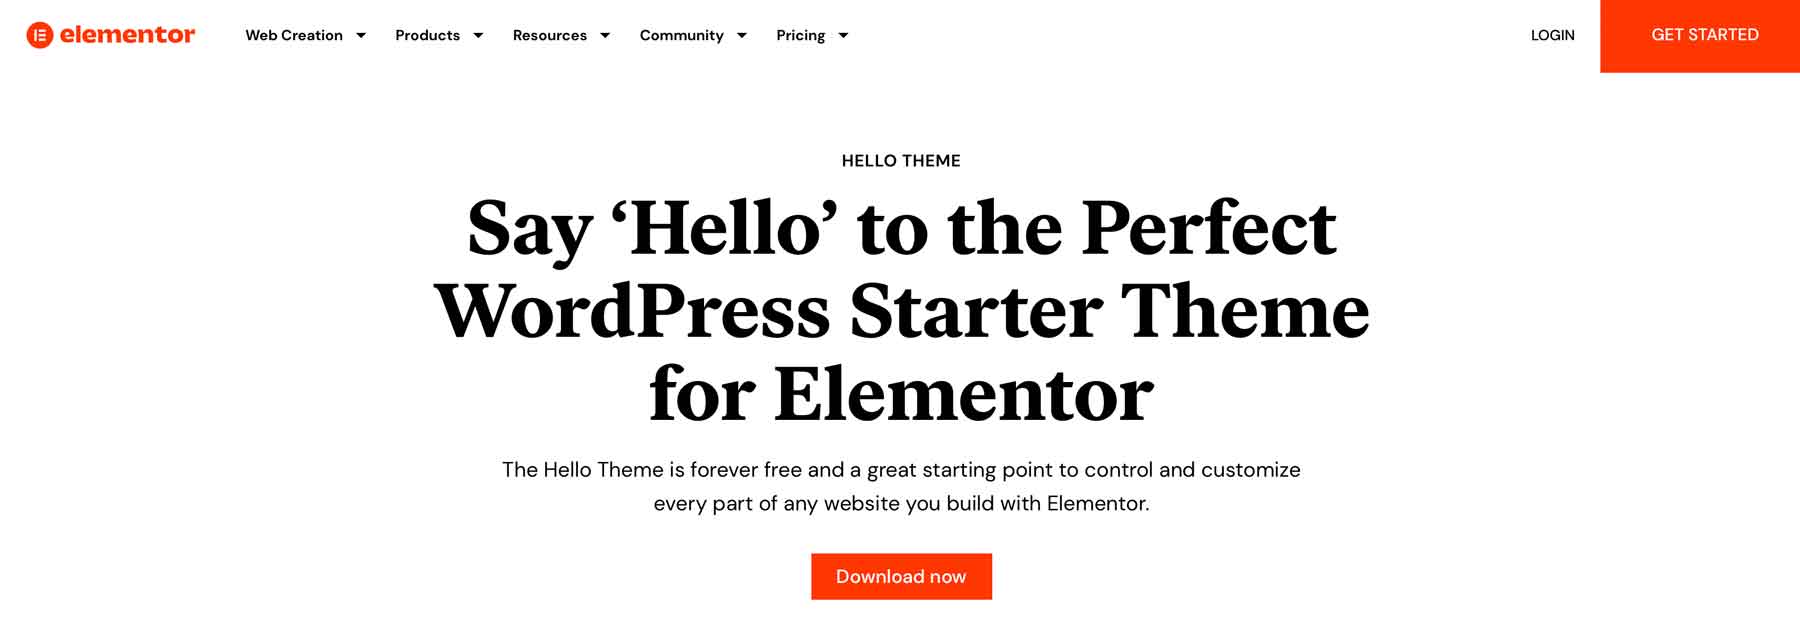 Hello Elementor responsvie WordPress theme